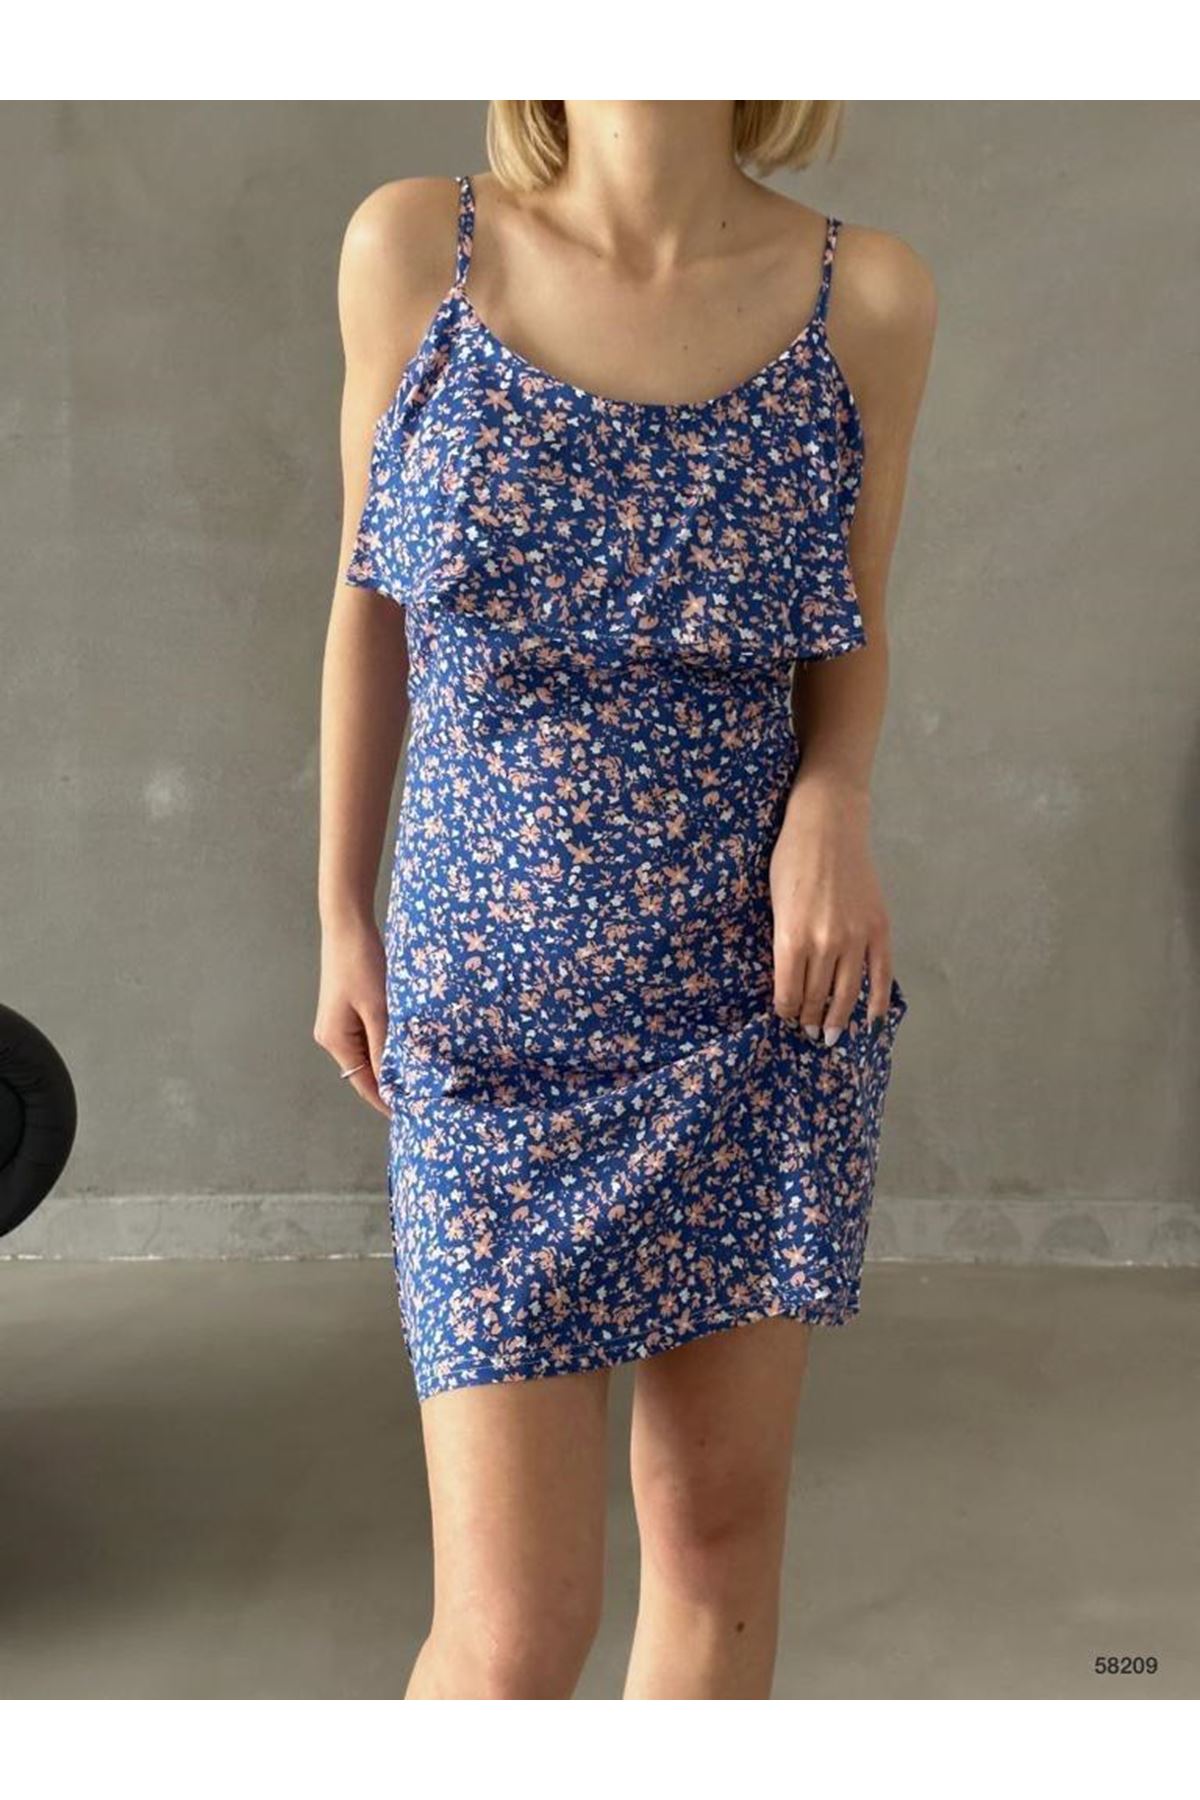 Kadın Lacivert Askılı Kısa Pelerin Model Yazlık Dokuma Elbise 5C-2133